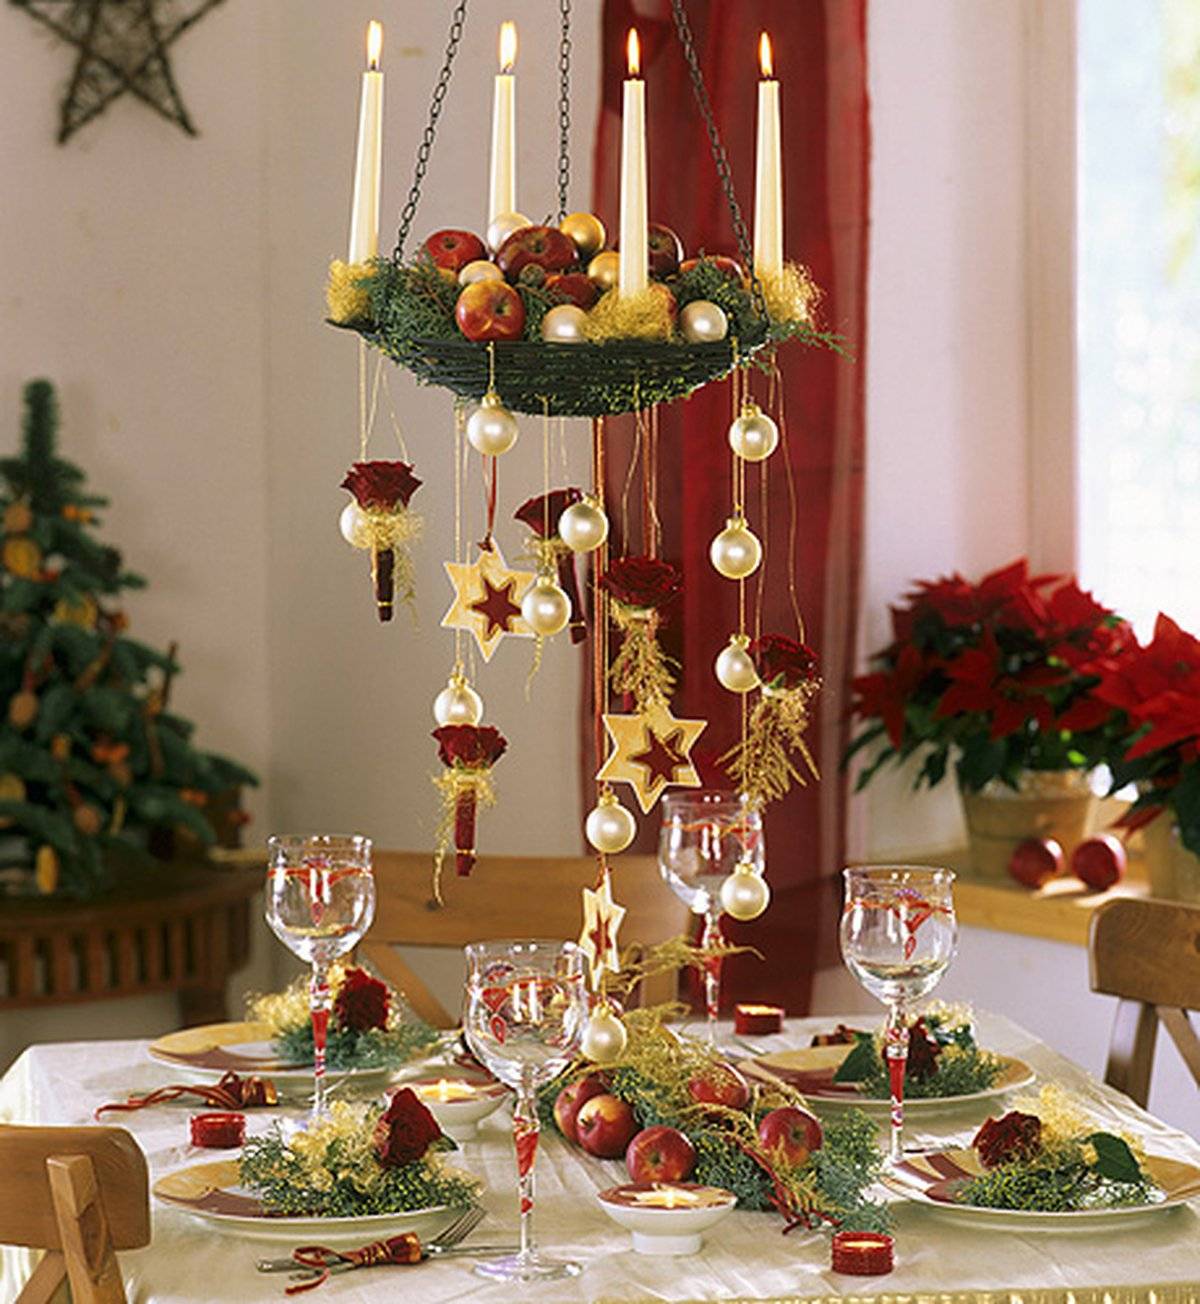 Как украсить стол на новый год своими руками, красивая сервировка для двоих на праздник и идеи для оформления блюд 2020